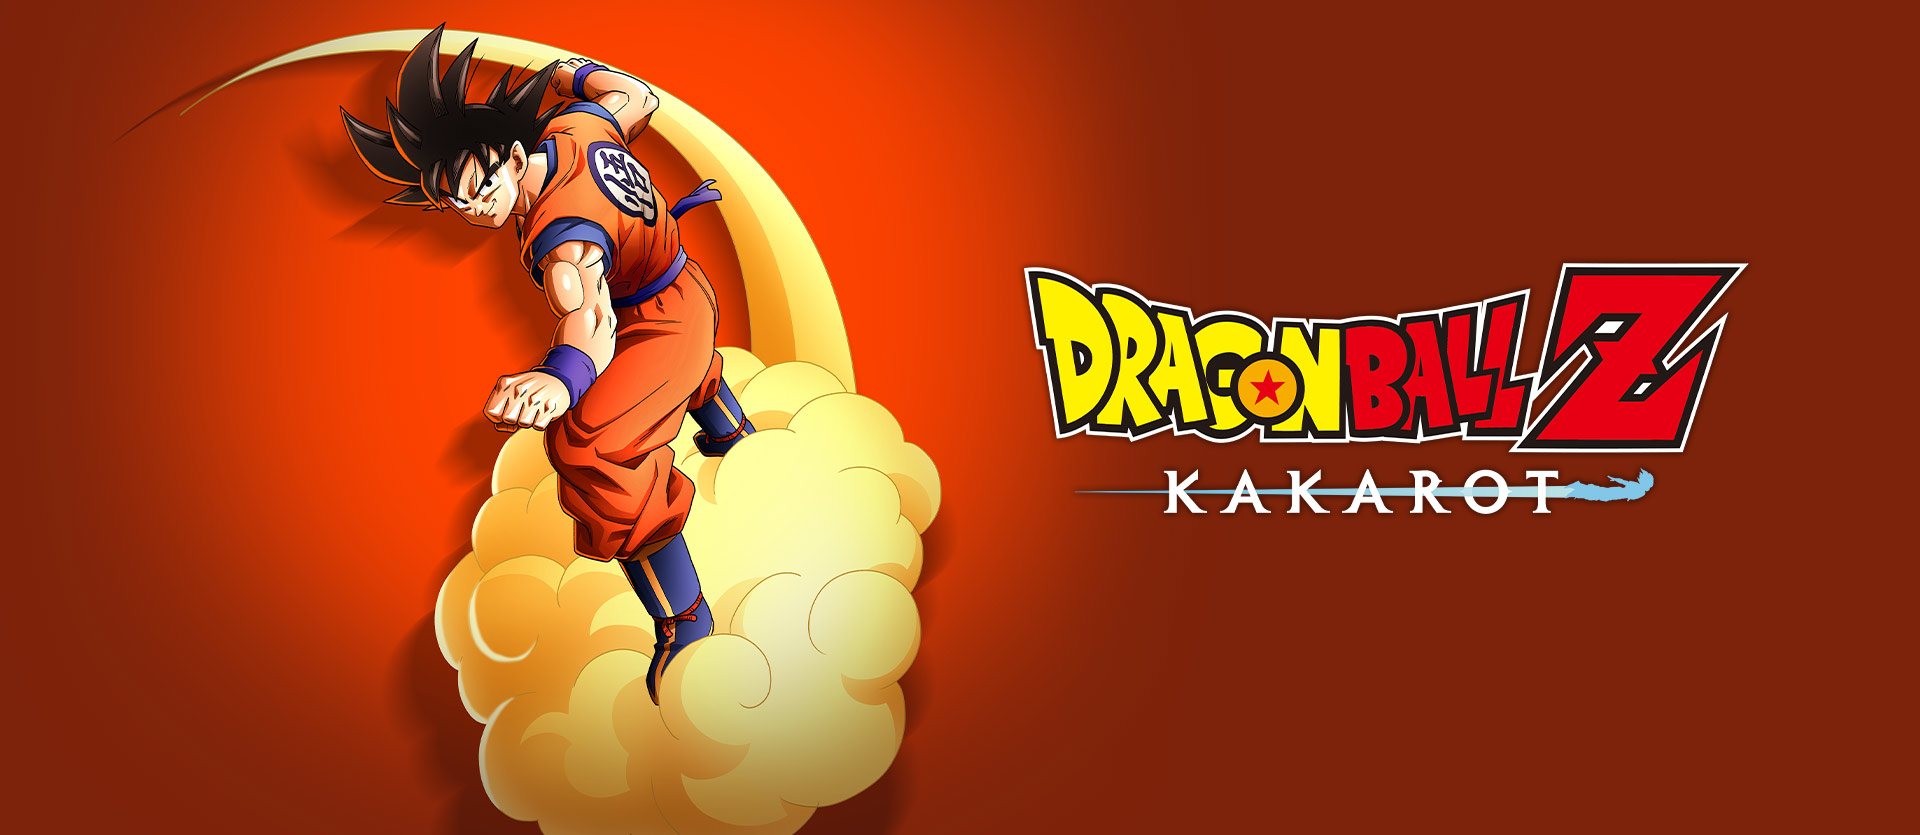 Jogamos Dragon Ball Z: Kakarot e ele é diferente de todos os games